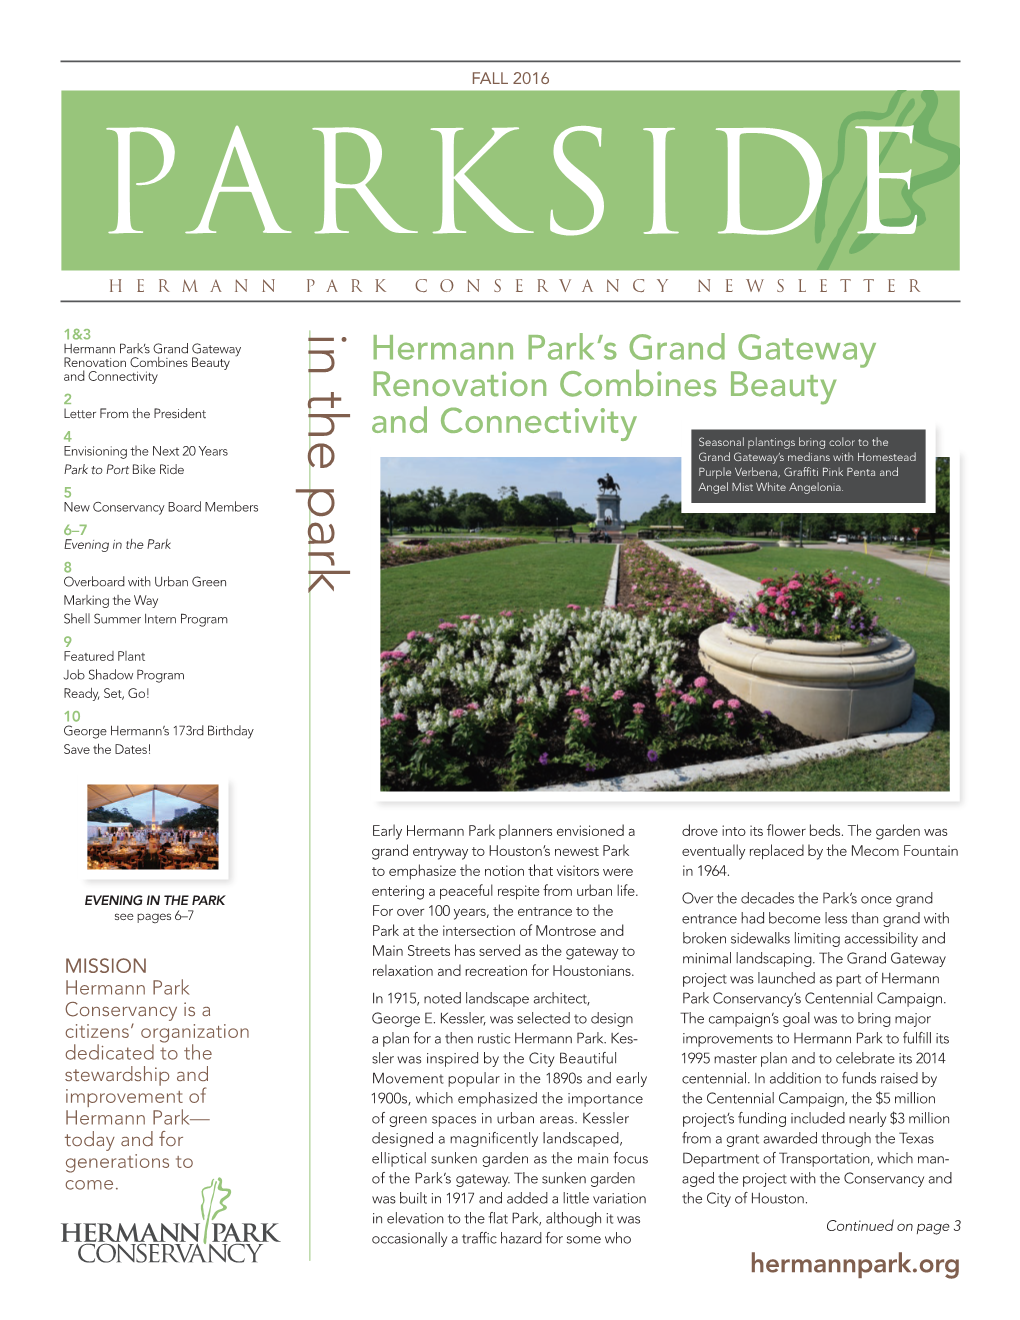 Fall 2016 Parkside Hermann Park Conservancy Newsletter